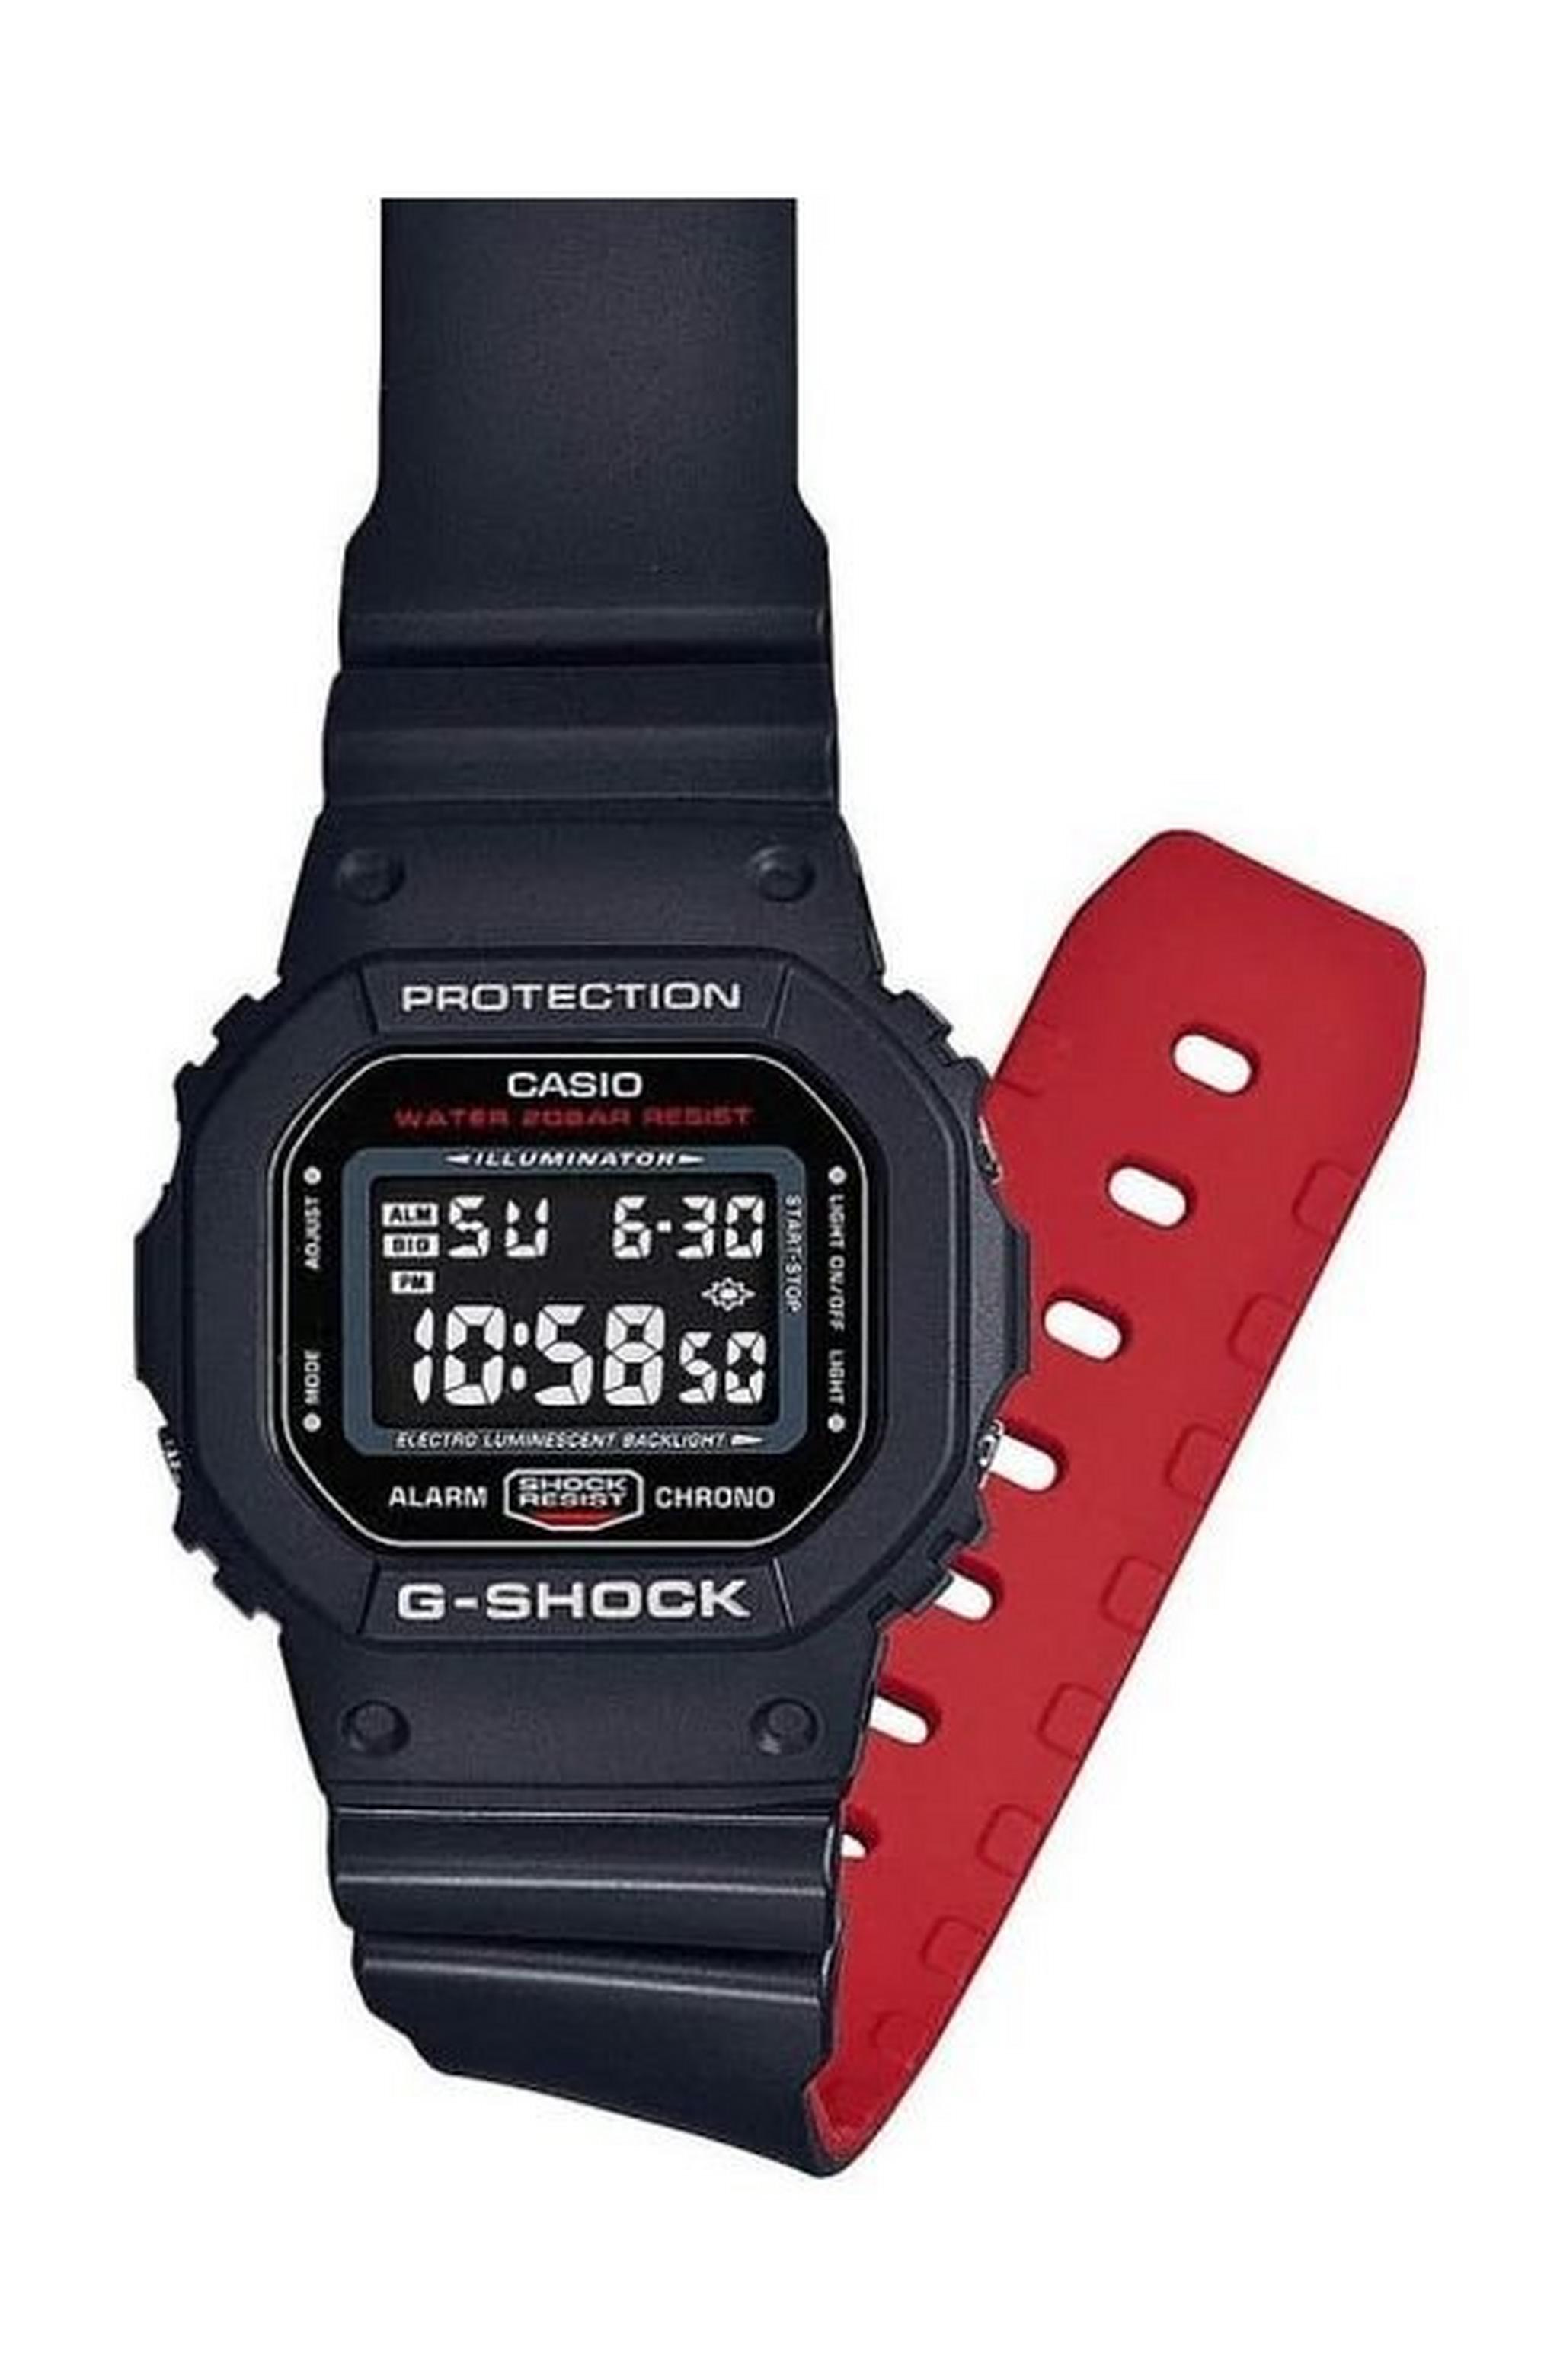 Casio G-Shock Resin Band Quartz Men's Sport Watch (DW-5600HR-1DR)